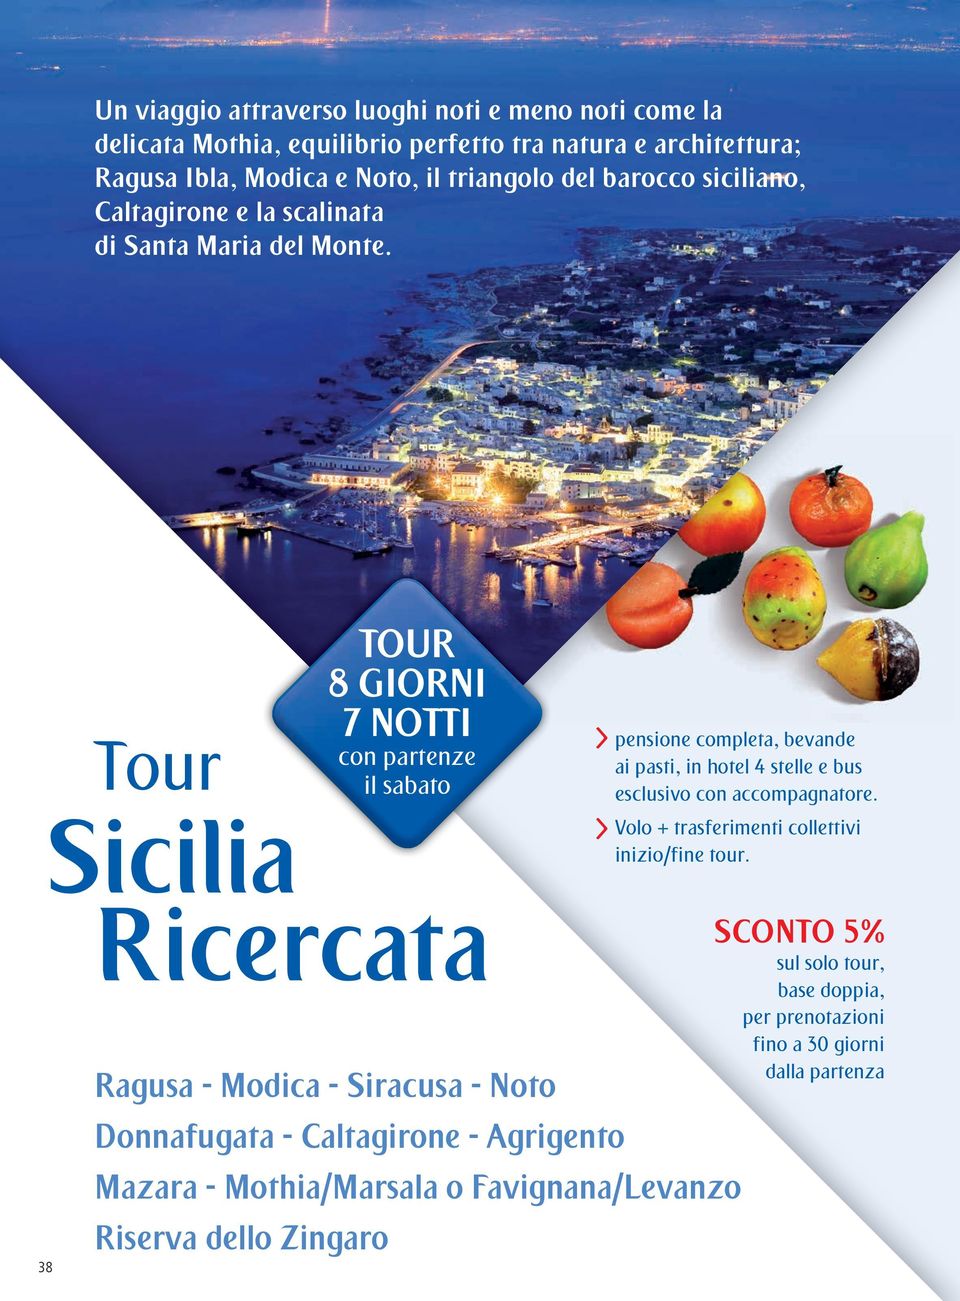 Tour Sicilia TOUR 8 GIORNI 7 NOTTI con partenze il sabato pensione completa, bevande ai pasti, in hotel 4 stelle e bus esclusivo con accompagnatore.